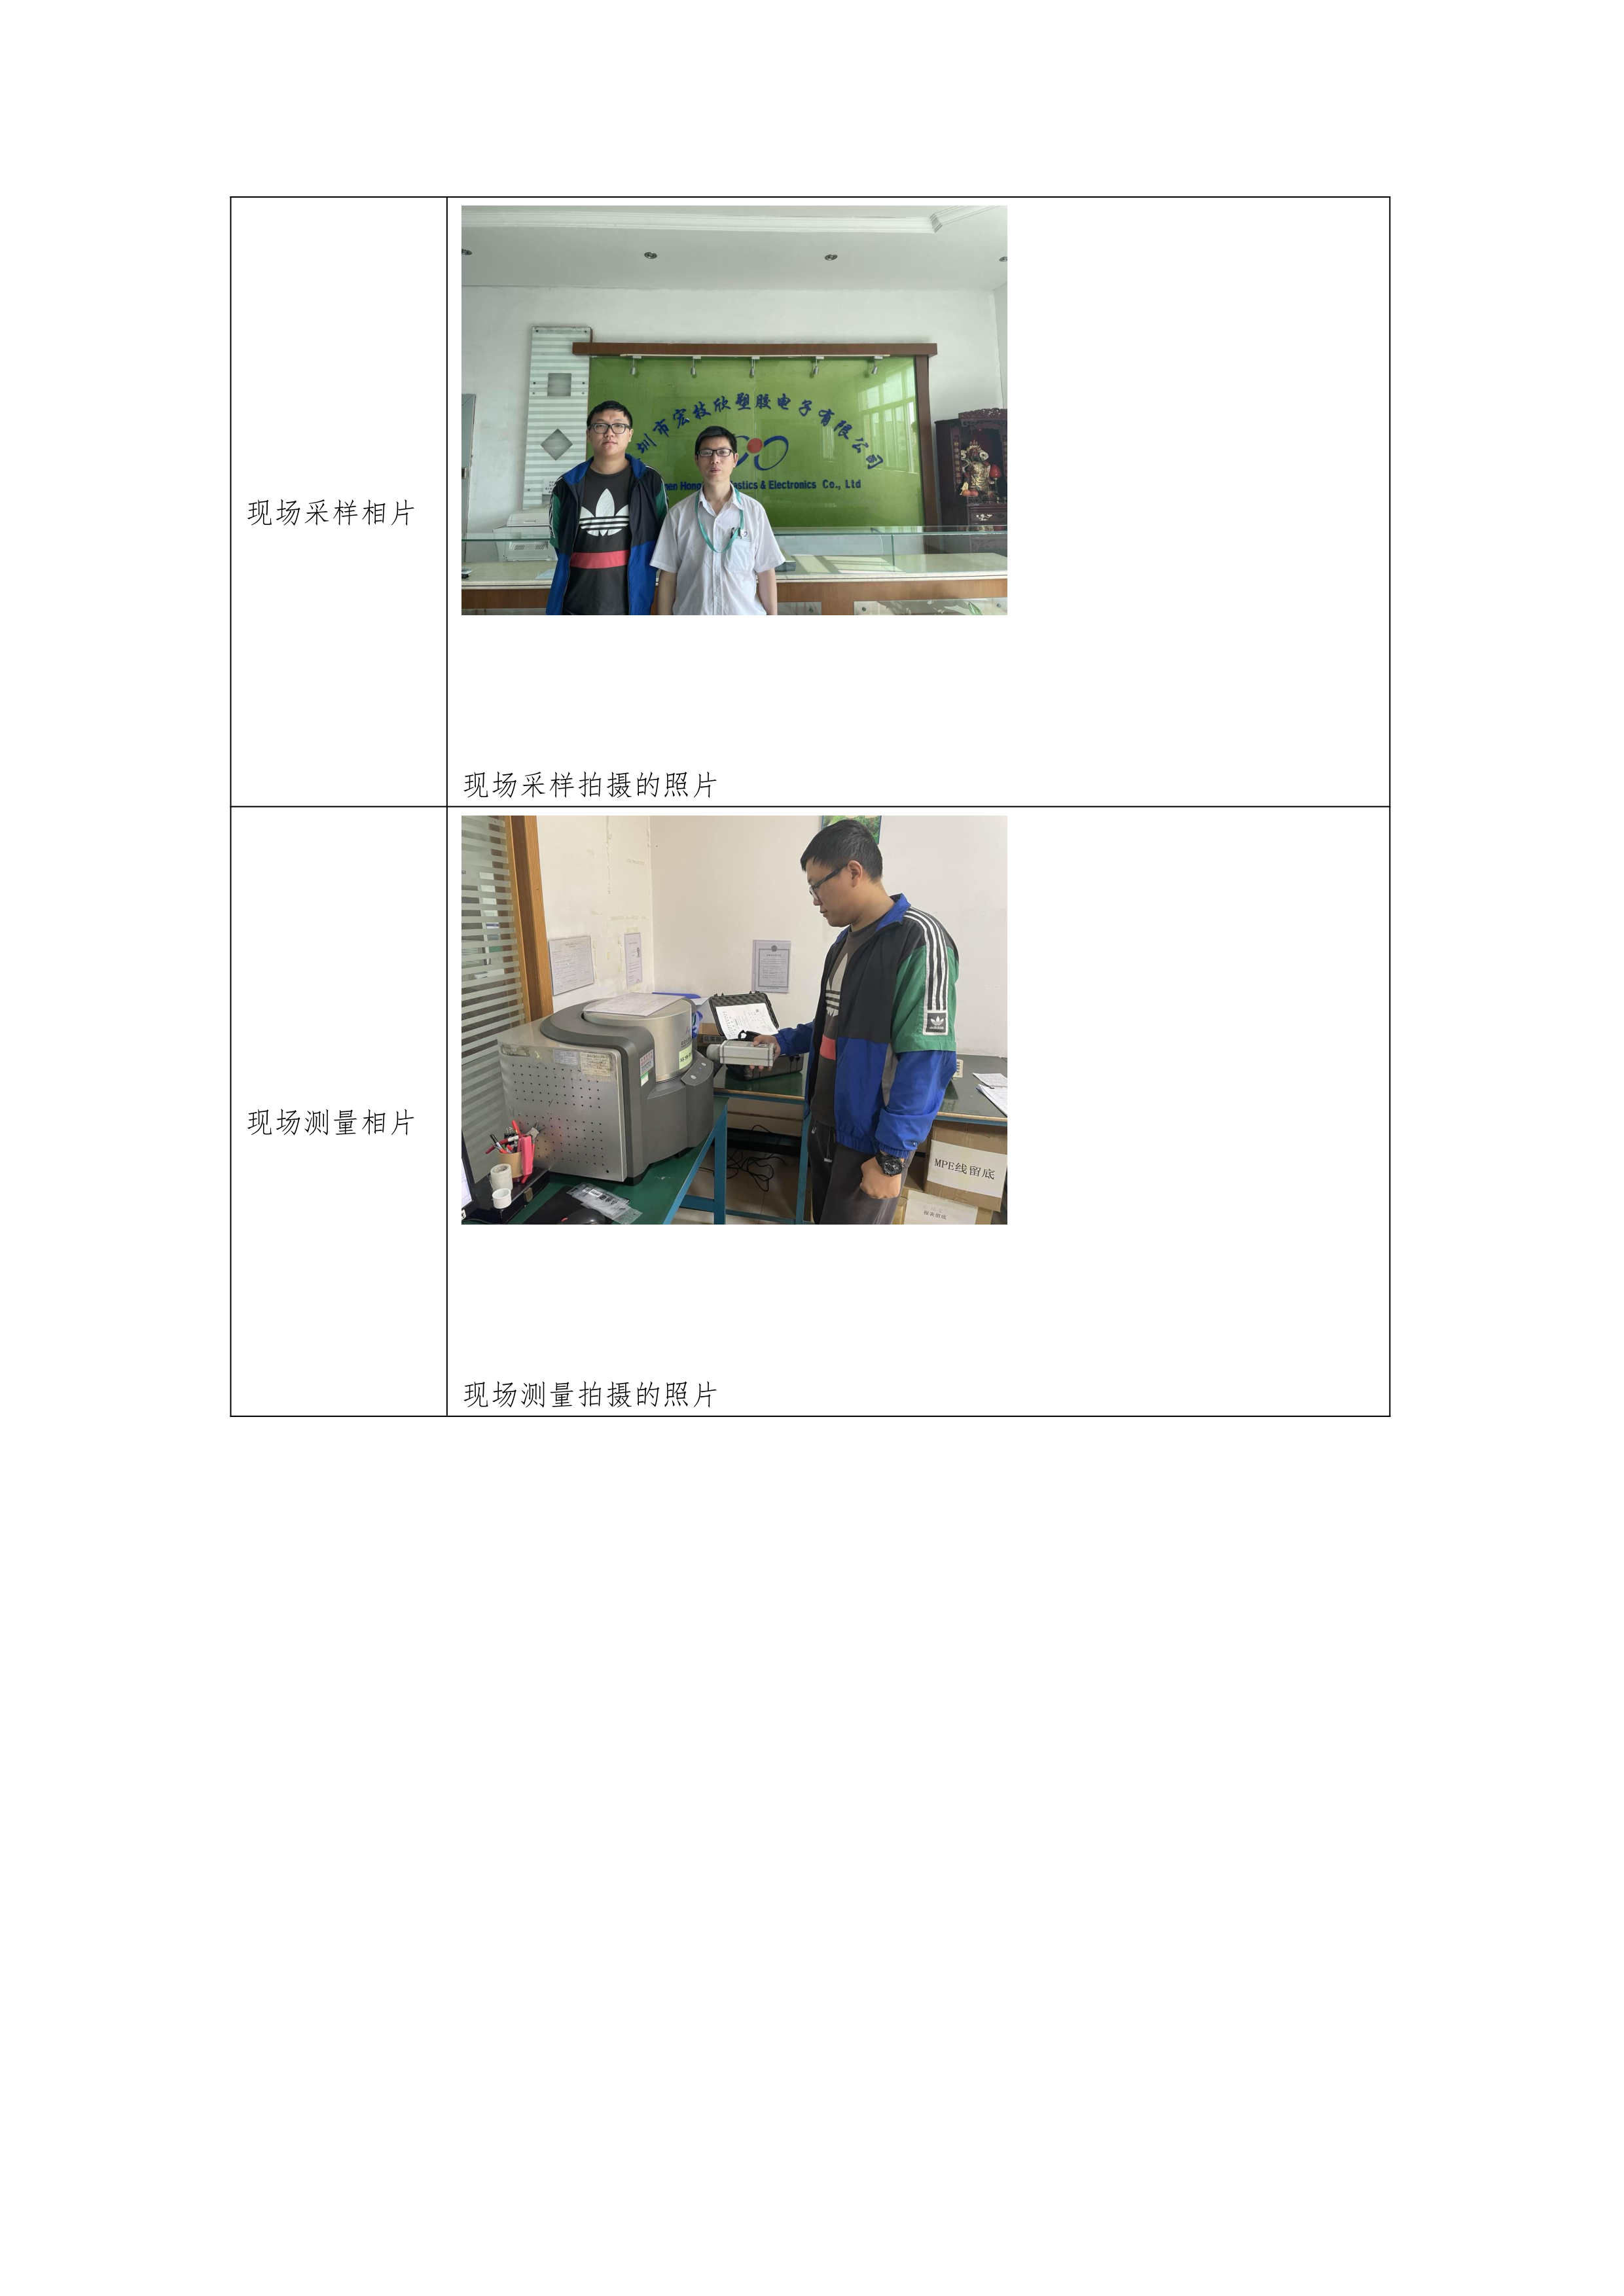 深圳市宏技欣塑胶电子有限公司(图2)